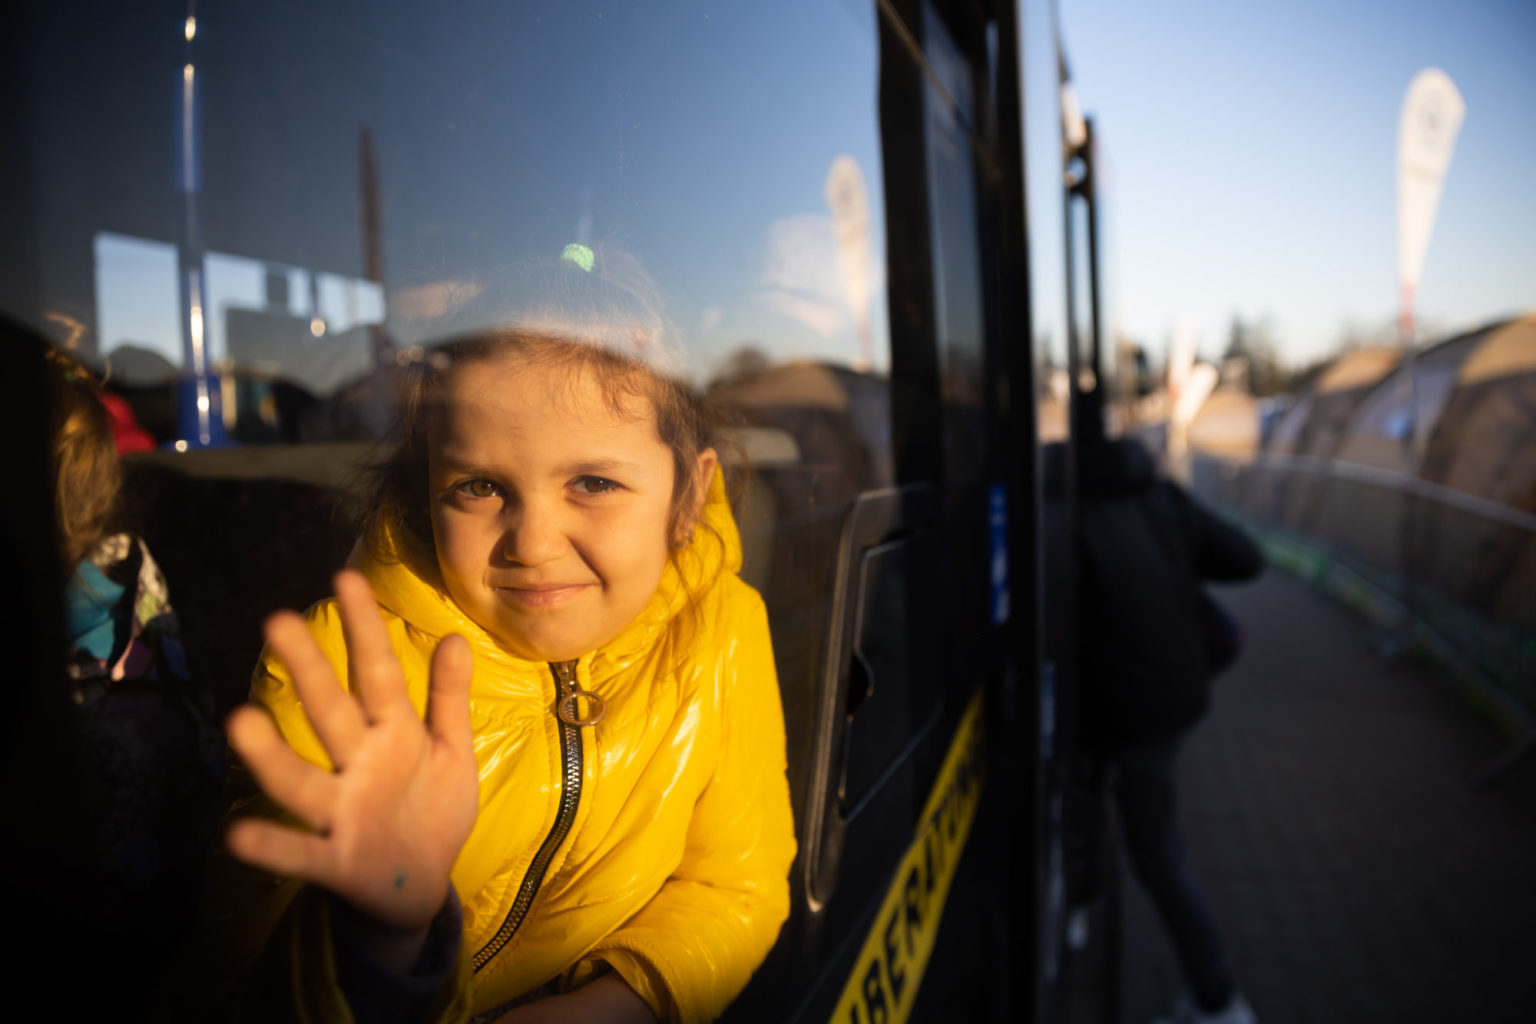 Liten jente som har flyktet fra Ukraina , vinker ut gjennom bussvindu.